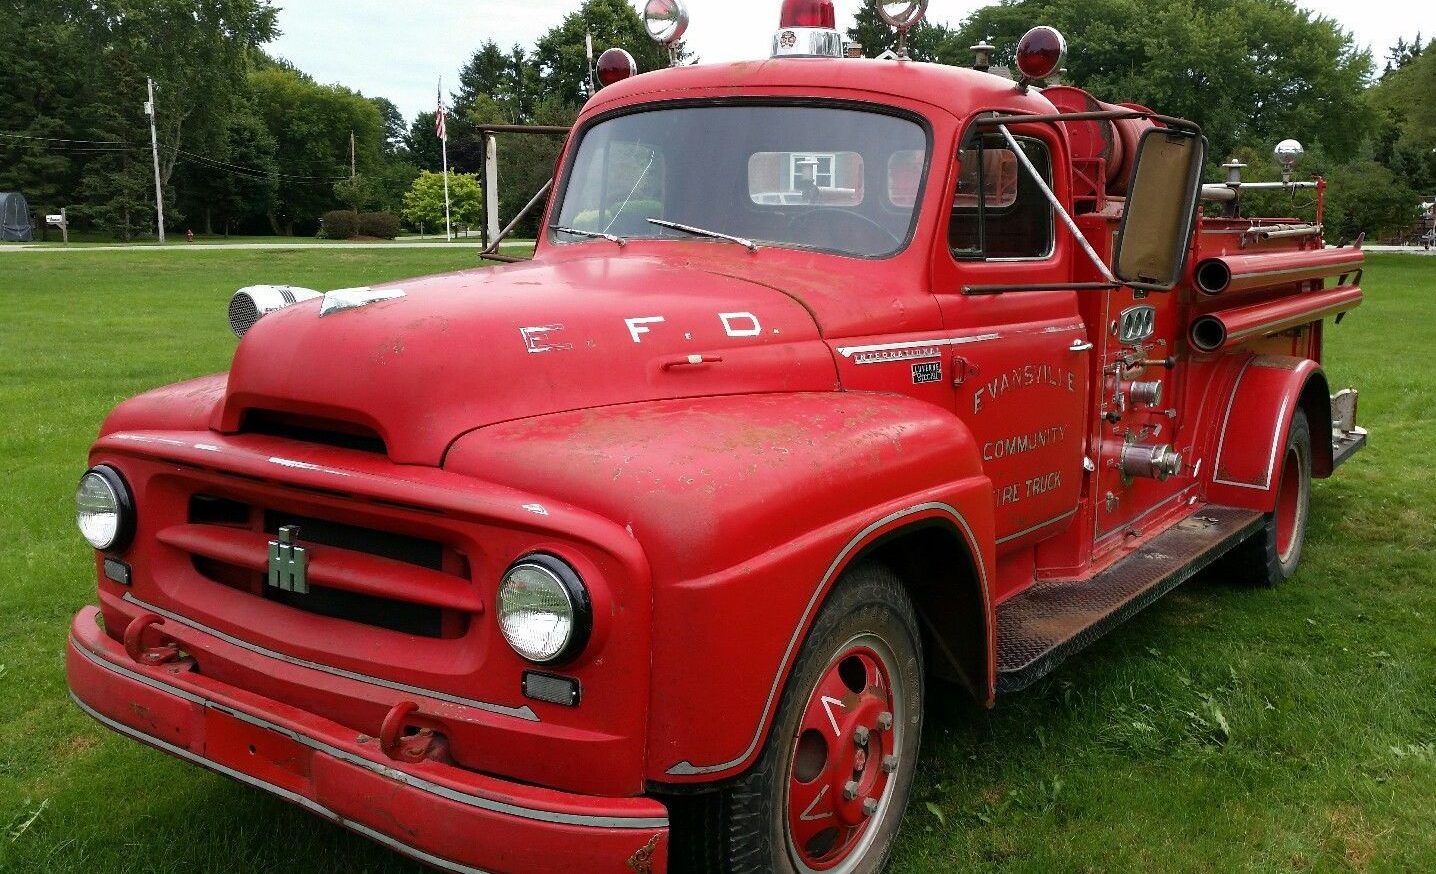 Cherry On Top: 1955 International Fire Truck